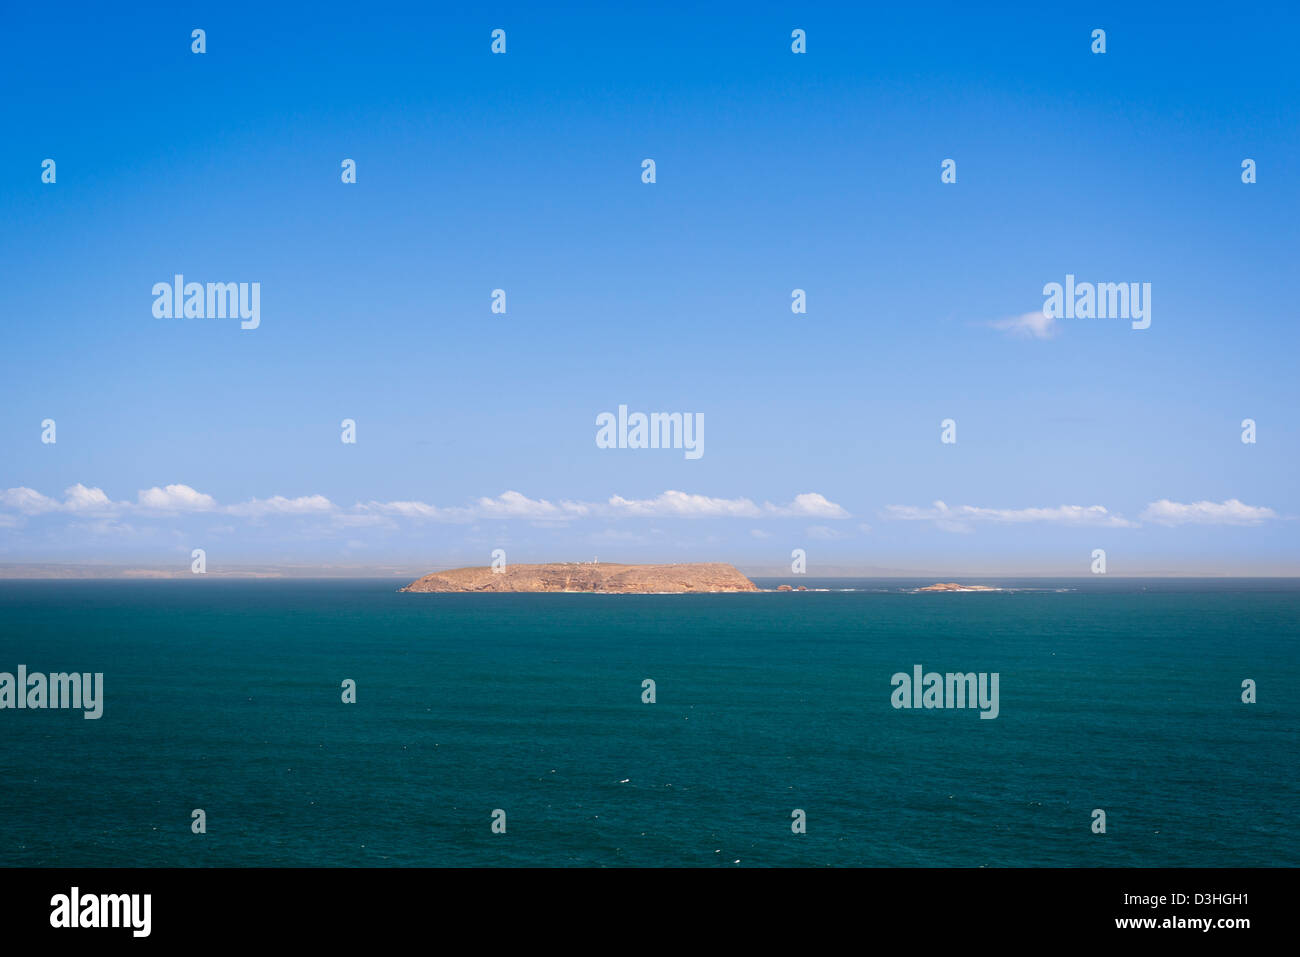 Oulles à distance îles au large des côtes du sud de l'Australie, avec un phare en vue Banque D'Images